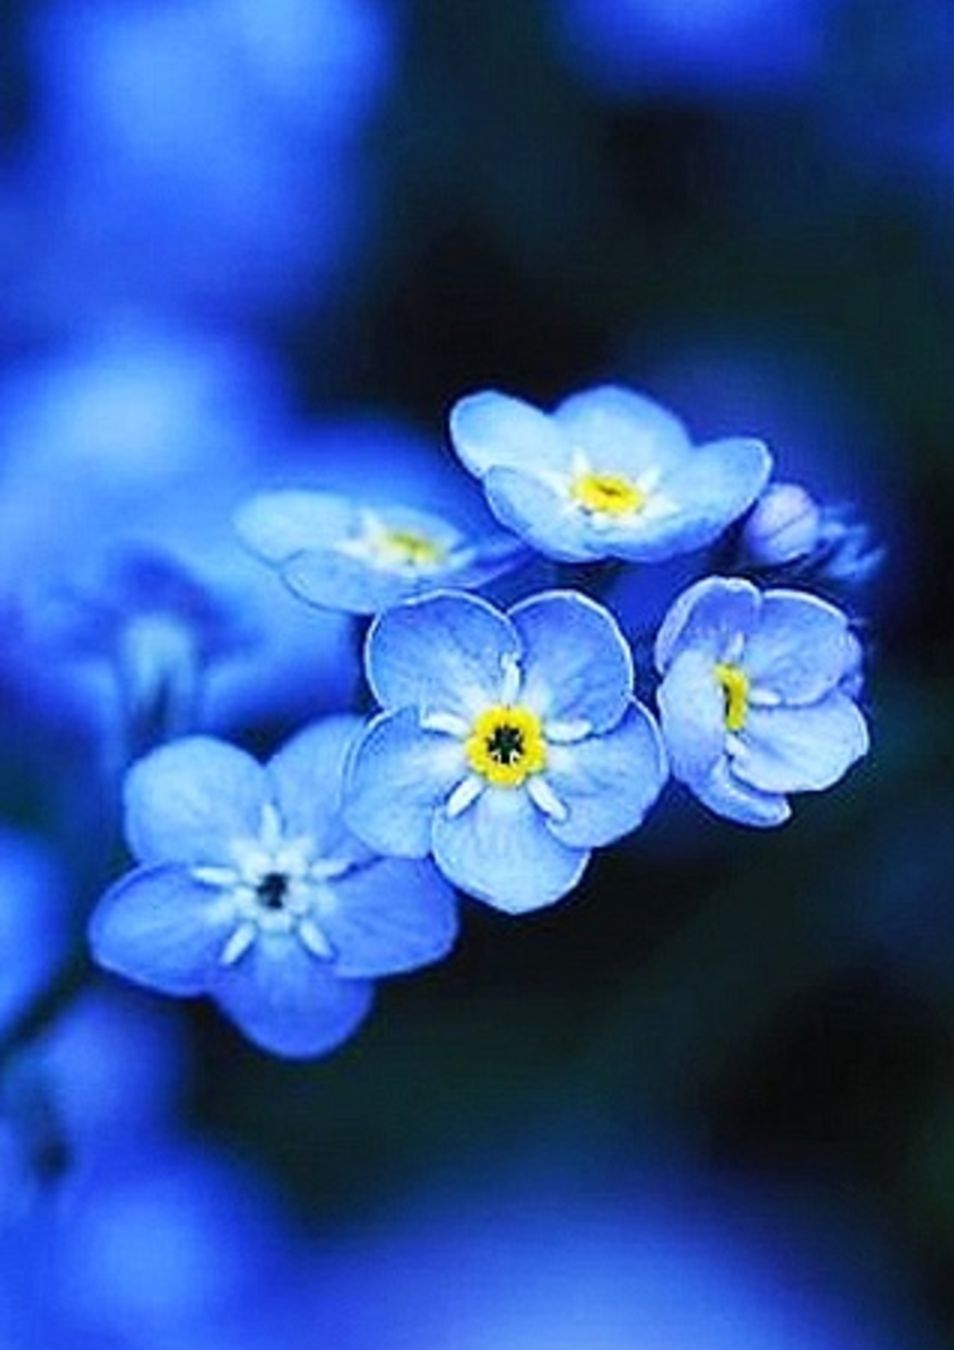 Блуе Фловер. Синие цветы. Красивые синие цветы. Синий цвет. Сине желтая незабудка